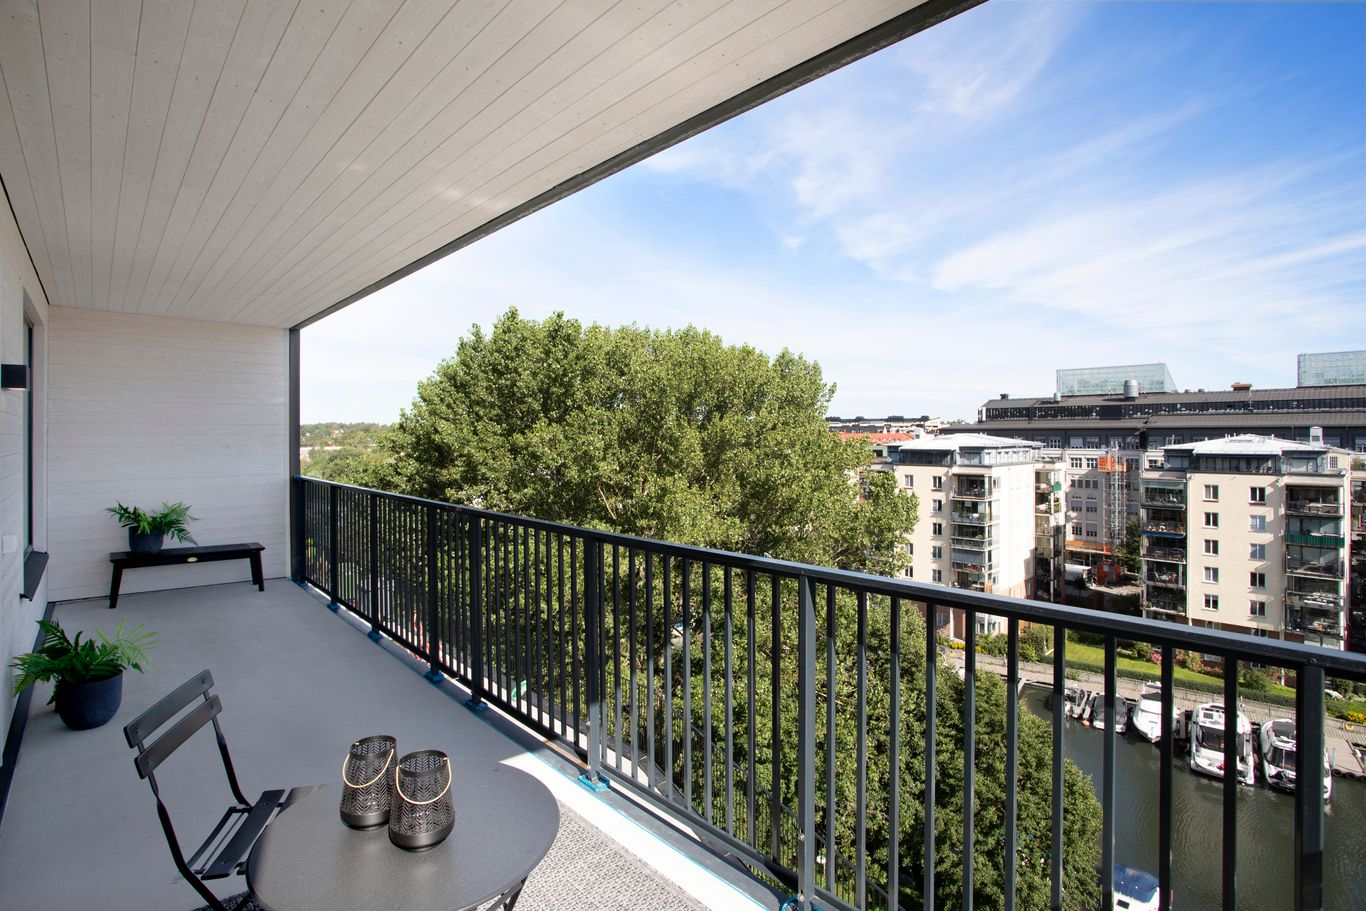 Solig urban balkong med utsikt över byggnader och träd, möblerad med bänk och krukväxter.